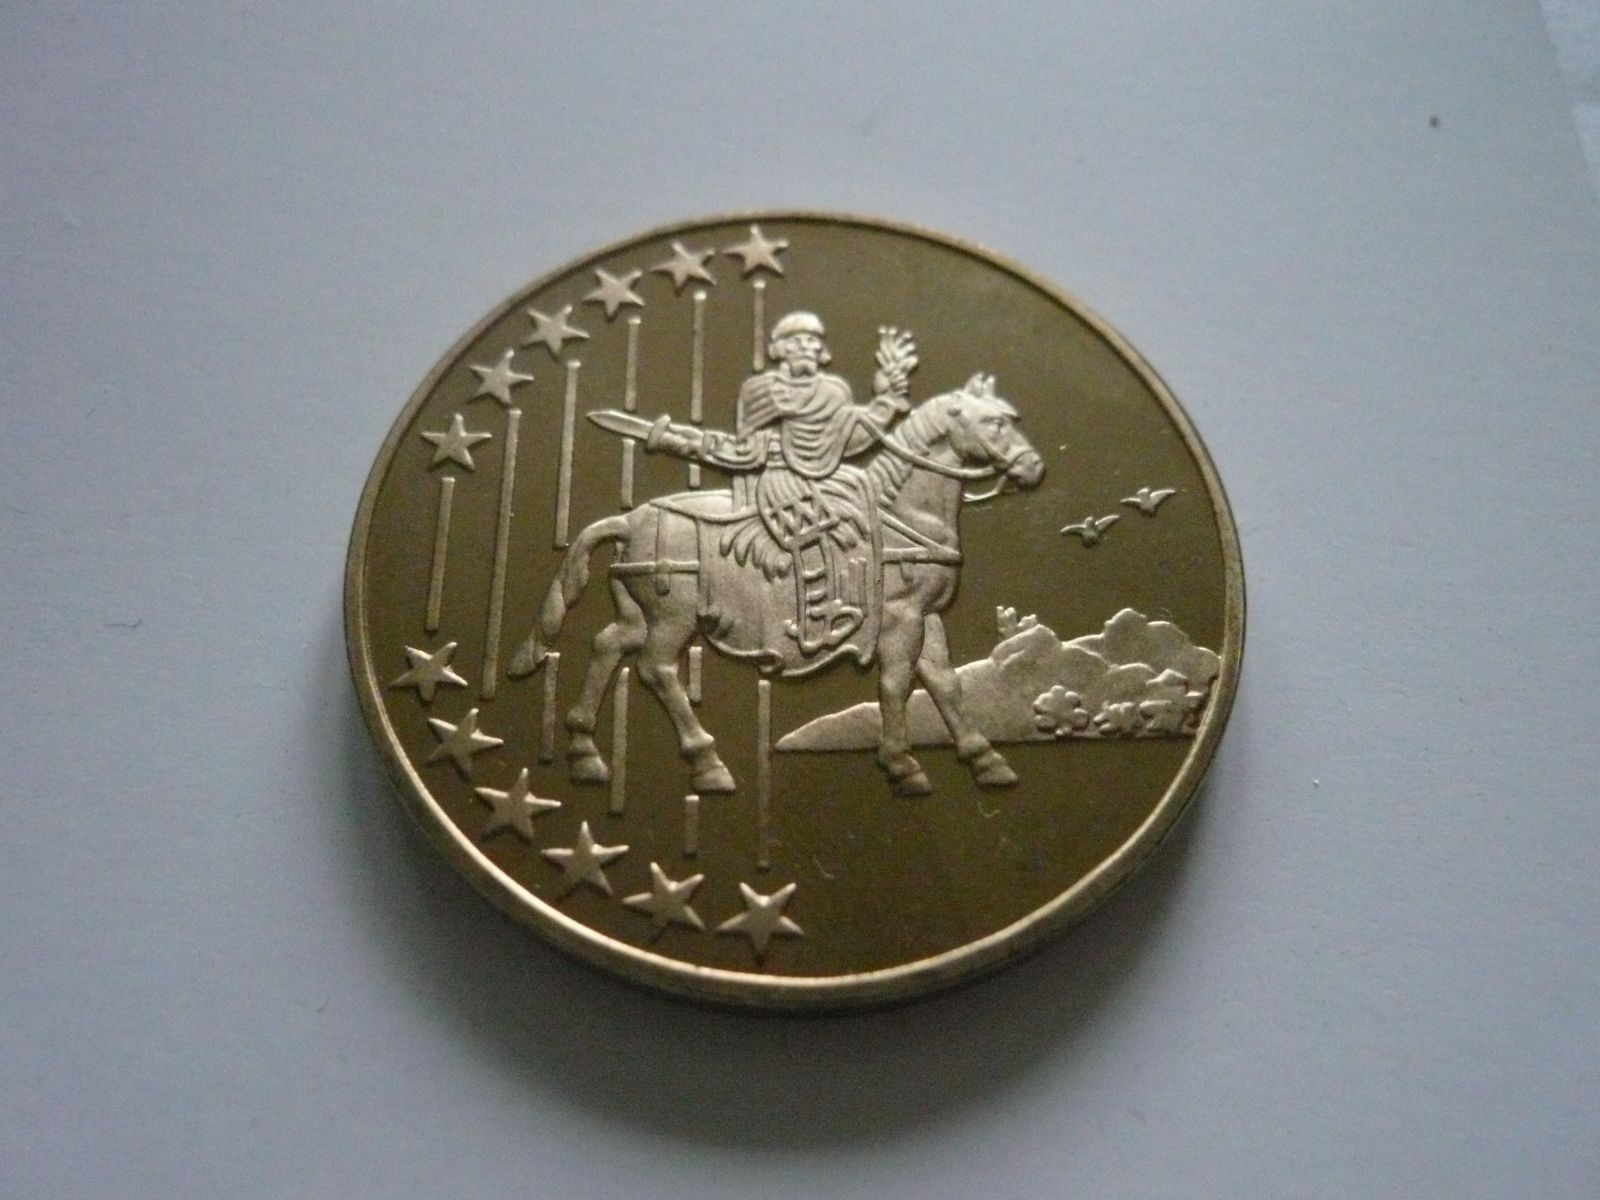 medaile na vstup do EU, zlacený bronz, průměr 40mm, ČR